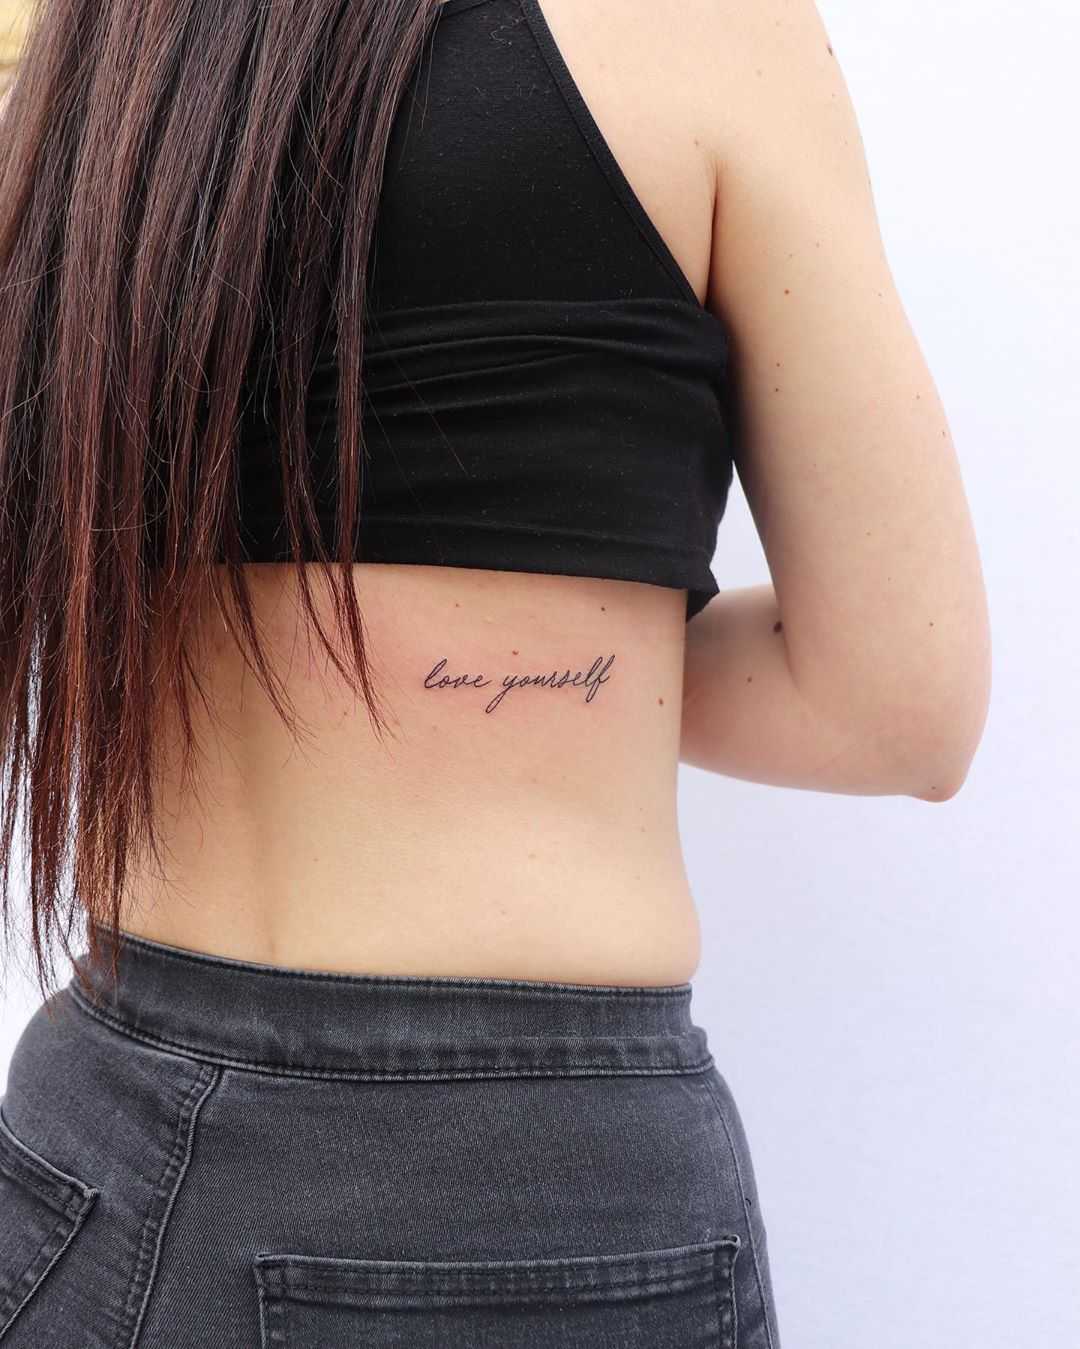 Love yourself by tattooist Zaya 